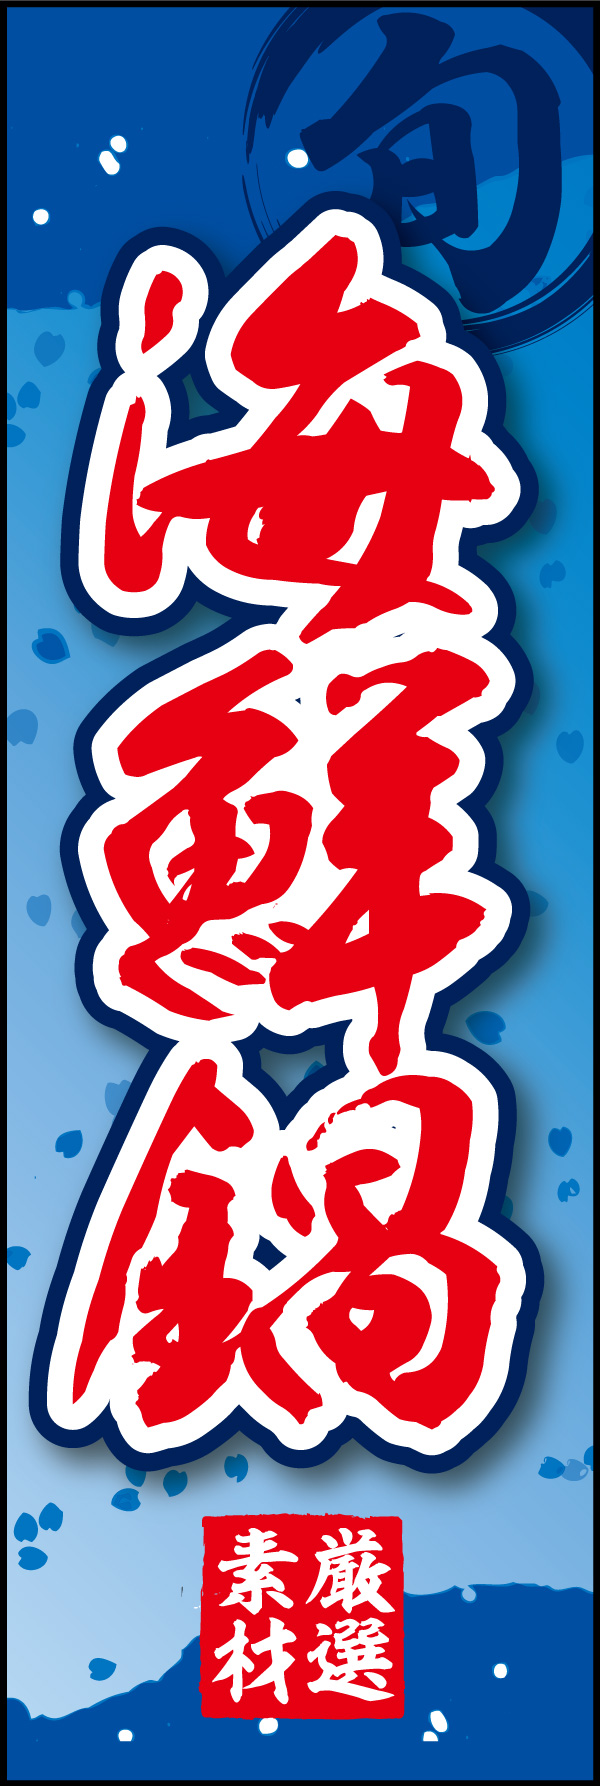 海鮮鍋 06 「海鮮鍋」ののぼりです。和柄をベースに筆文字で「和」のイメージを強調してみました。(Y.M)